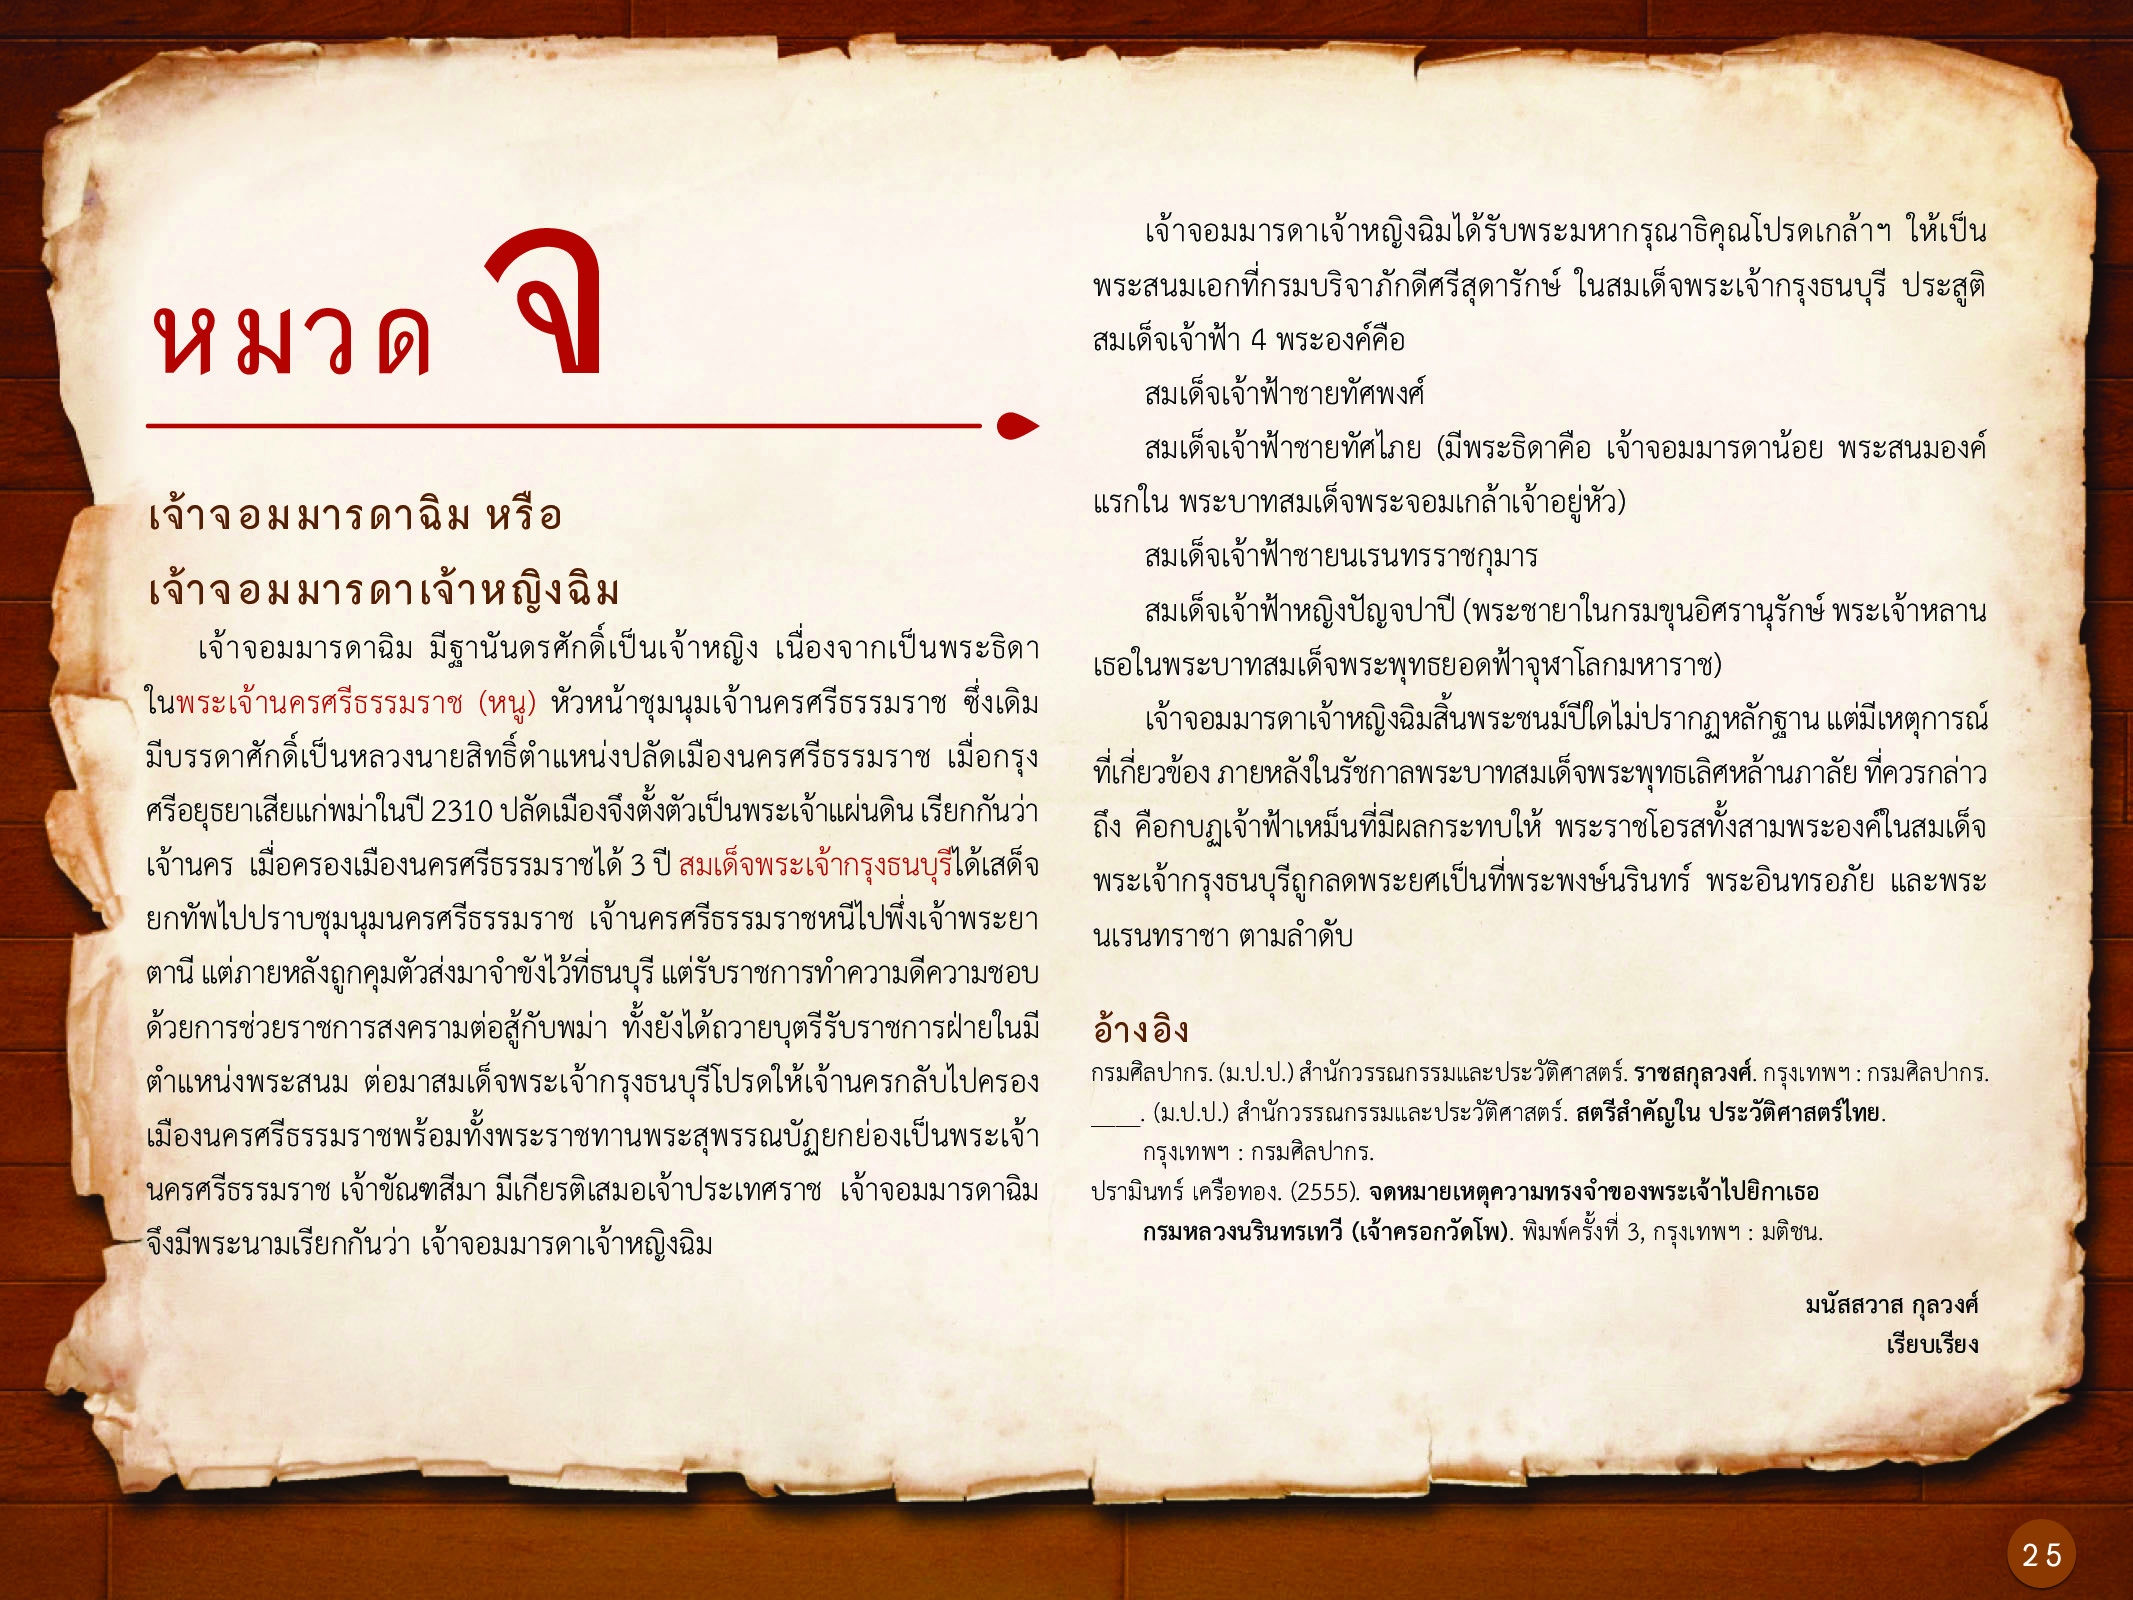 ประวัติศาสตร์กรุงธนบุรี ./images/history_dhonburi/25.jpg